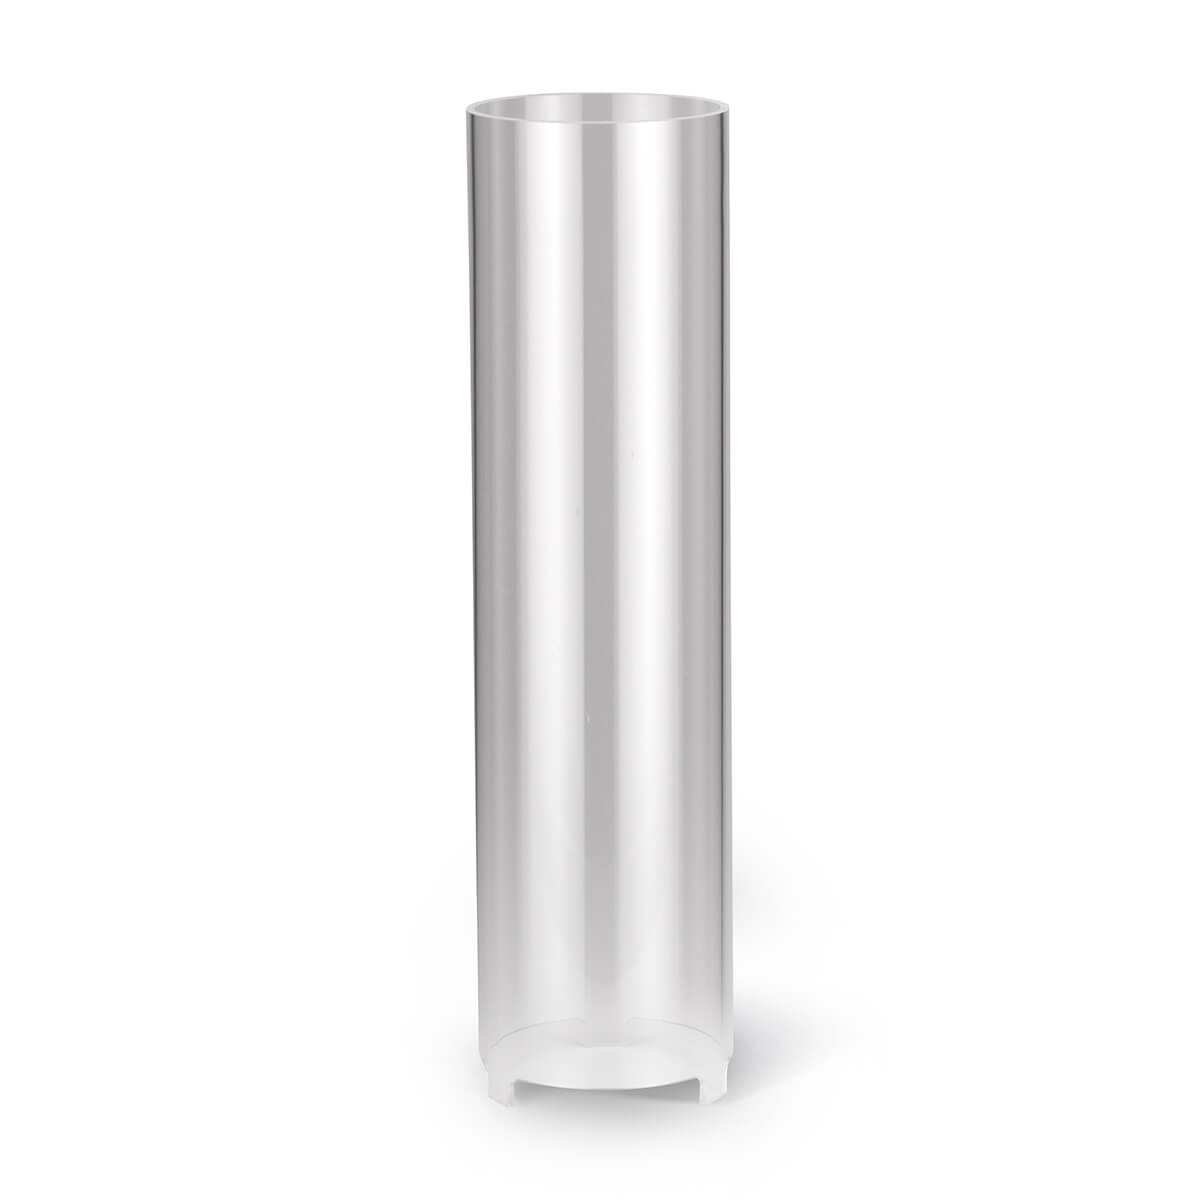 Windschutz für Kerzen – Plexiglas – 310/80 mm